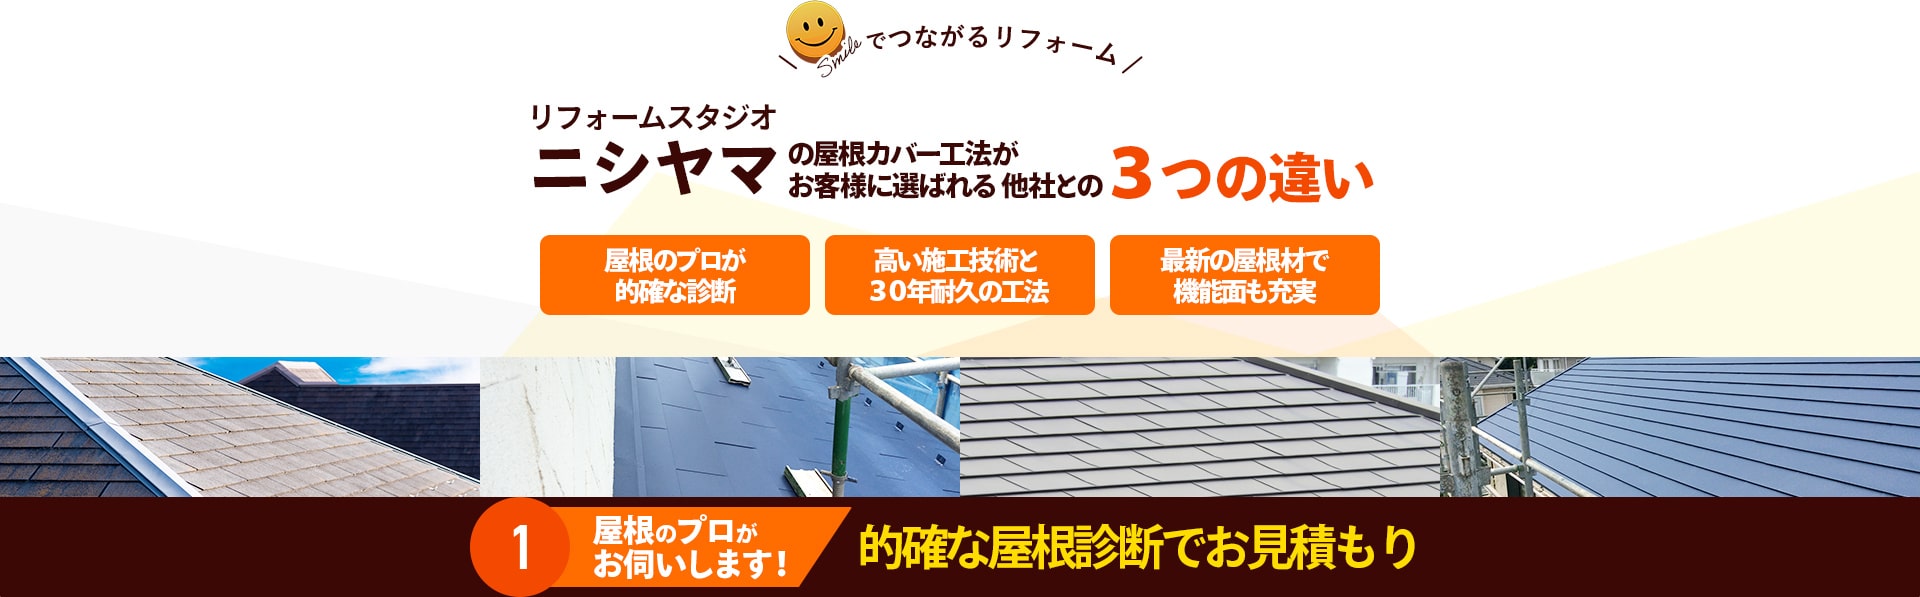 リフォームスタジオニシヤマの屋根カバー工法がお客様に選ばれる 他社との３つの違い1屋根のプロがお伺いします！的確な屋根診断でお見積もり